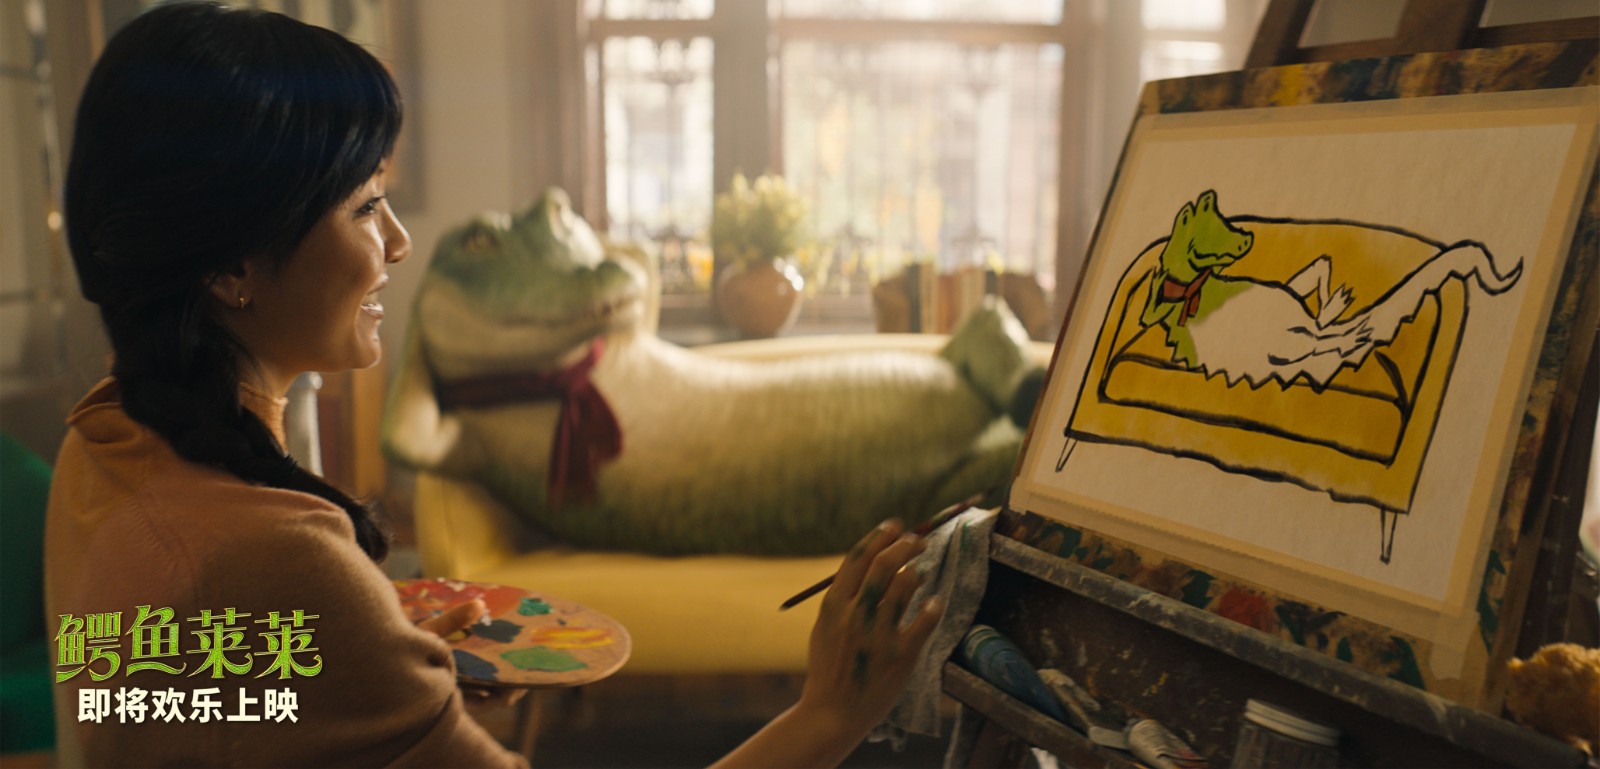 电影《鳄鱼莱莱》即将上映 全世界最会唱歌的鳄鱼欢乐开麦